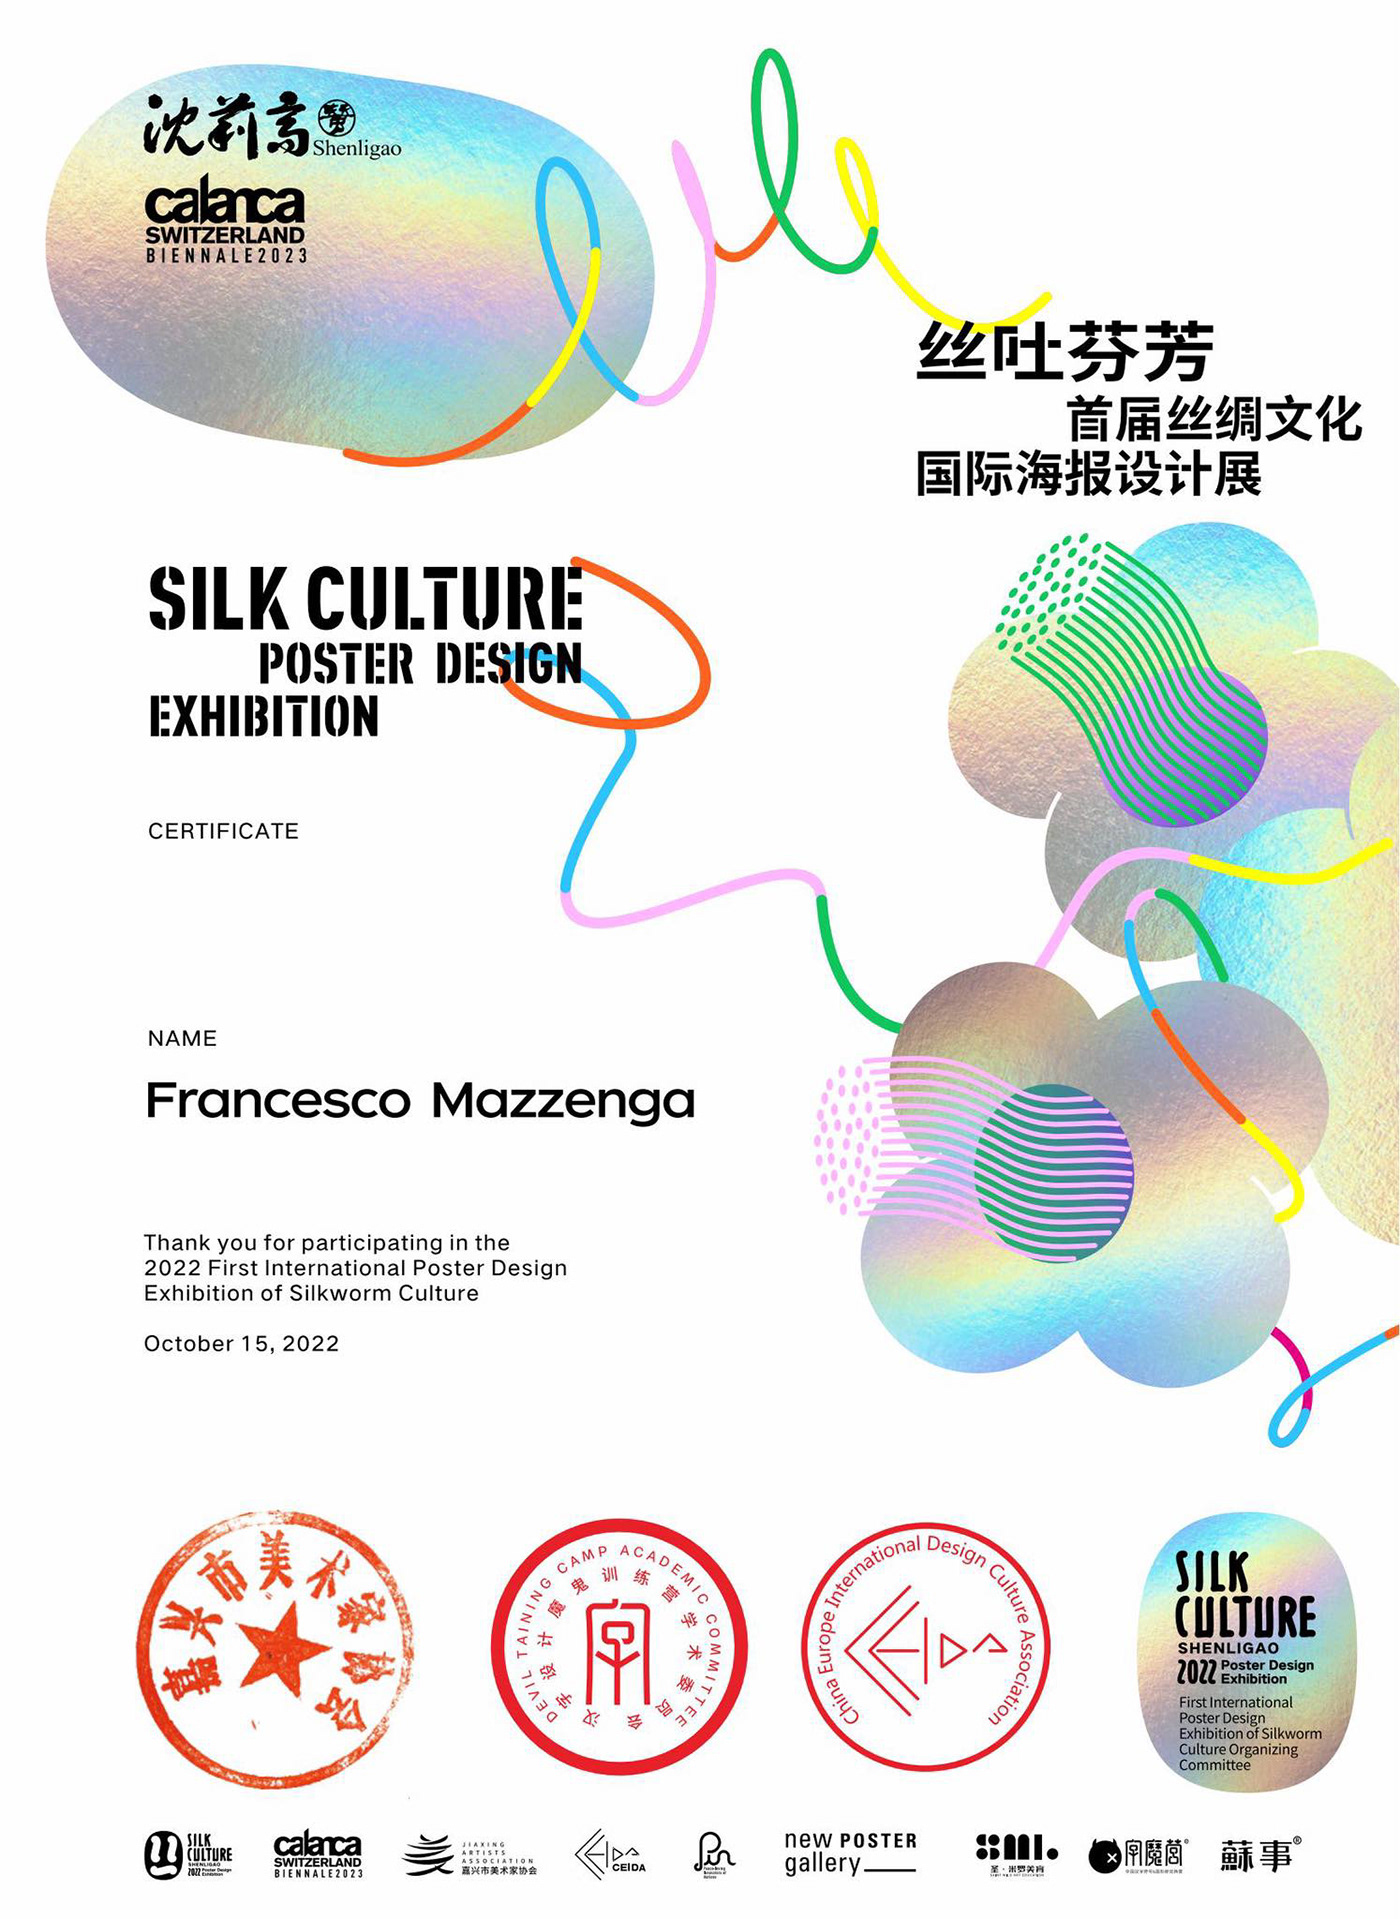 cina Exhibition  Francesco Mazzenga Poster Design Shen Ligao Silk Culture